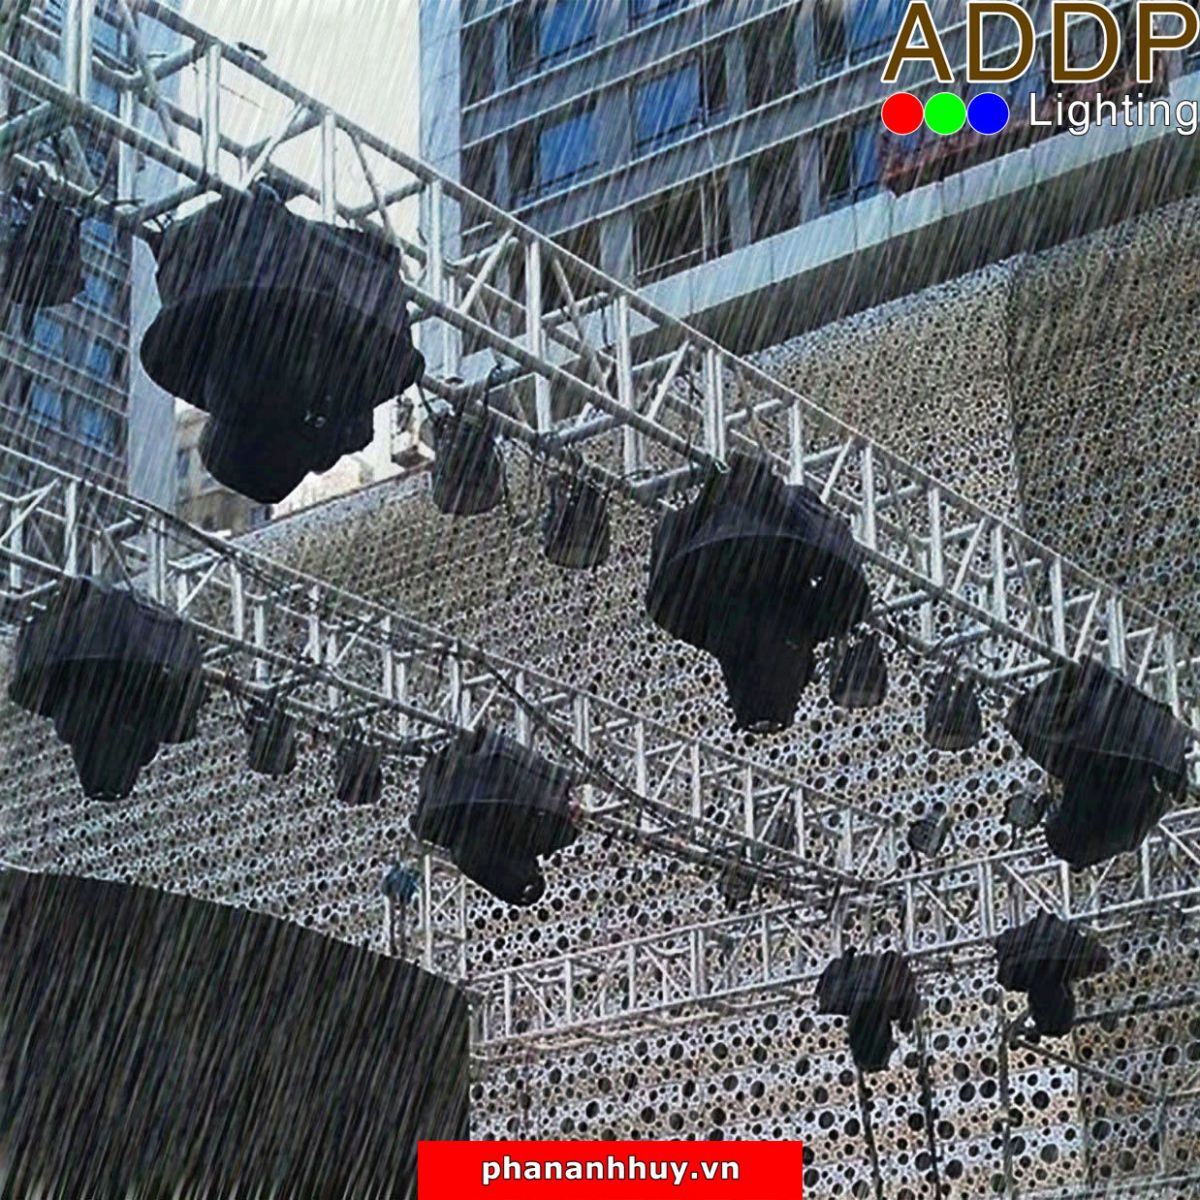 Áo mưa cho đèn sân khấu